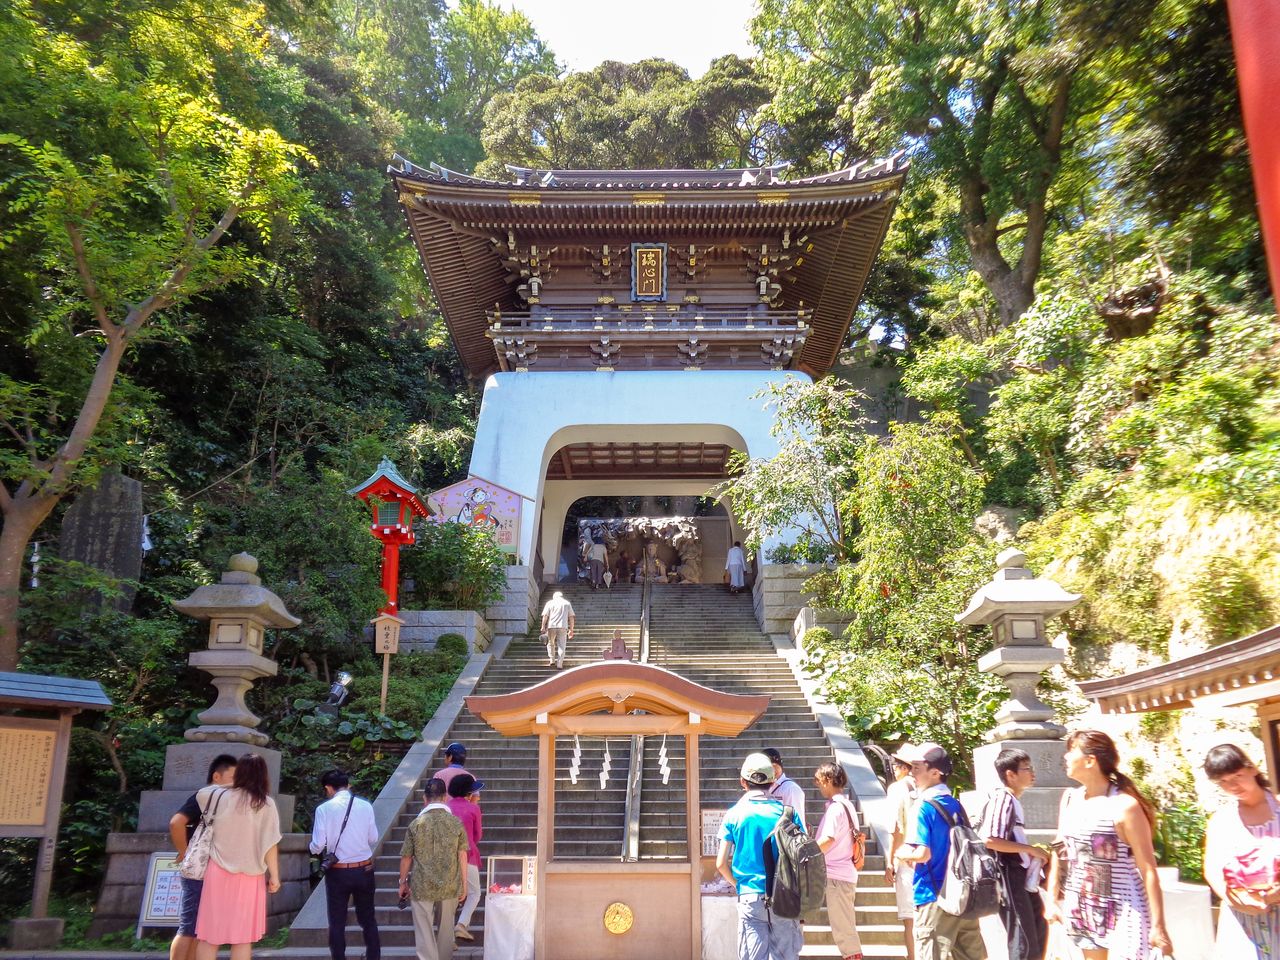 La puerta sagrada del santuario está inspirada en el palacio Ryūgūjō. Fotografía: santuario de Enoshima.